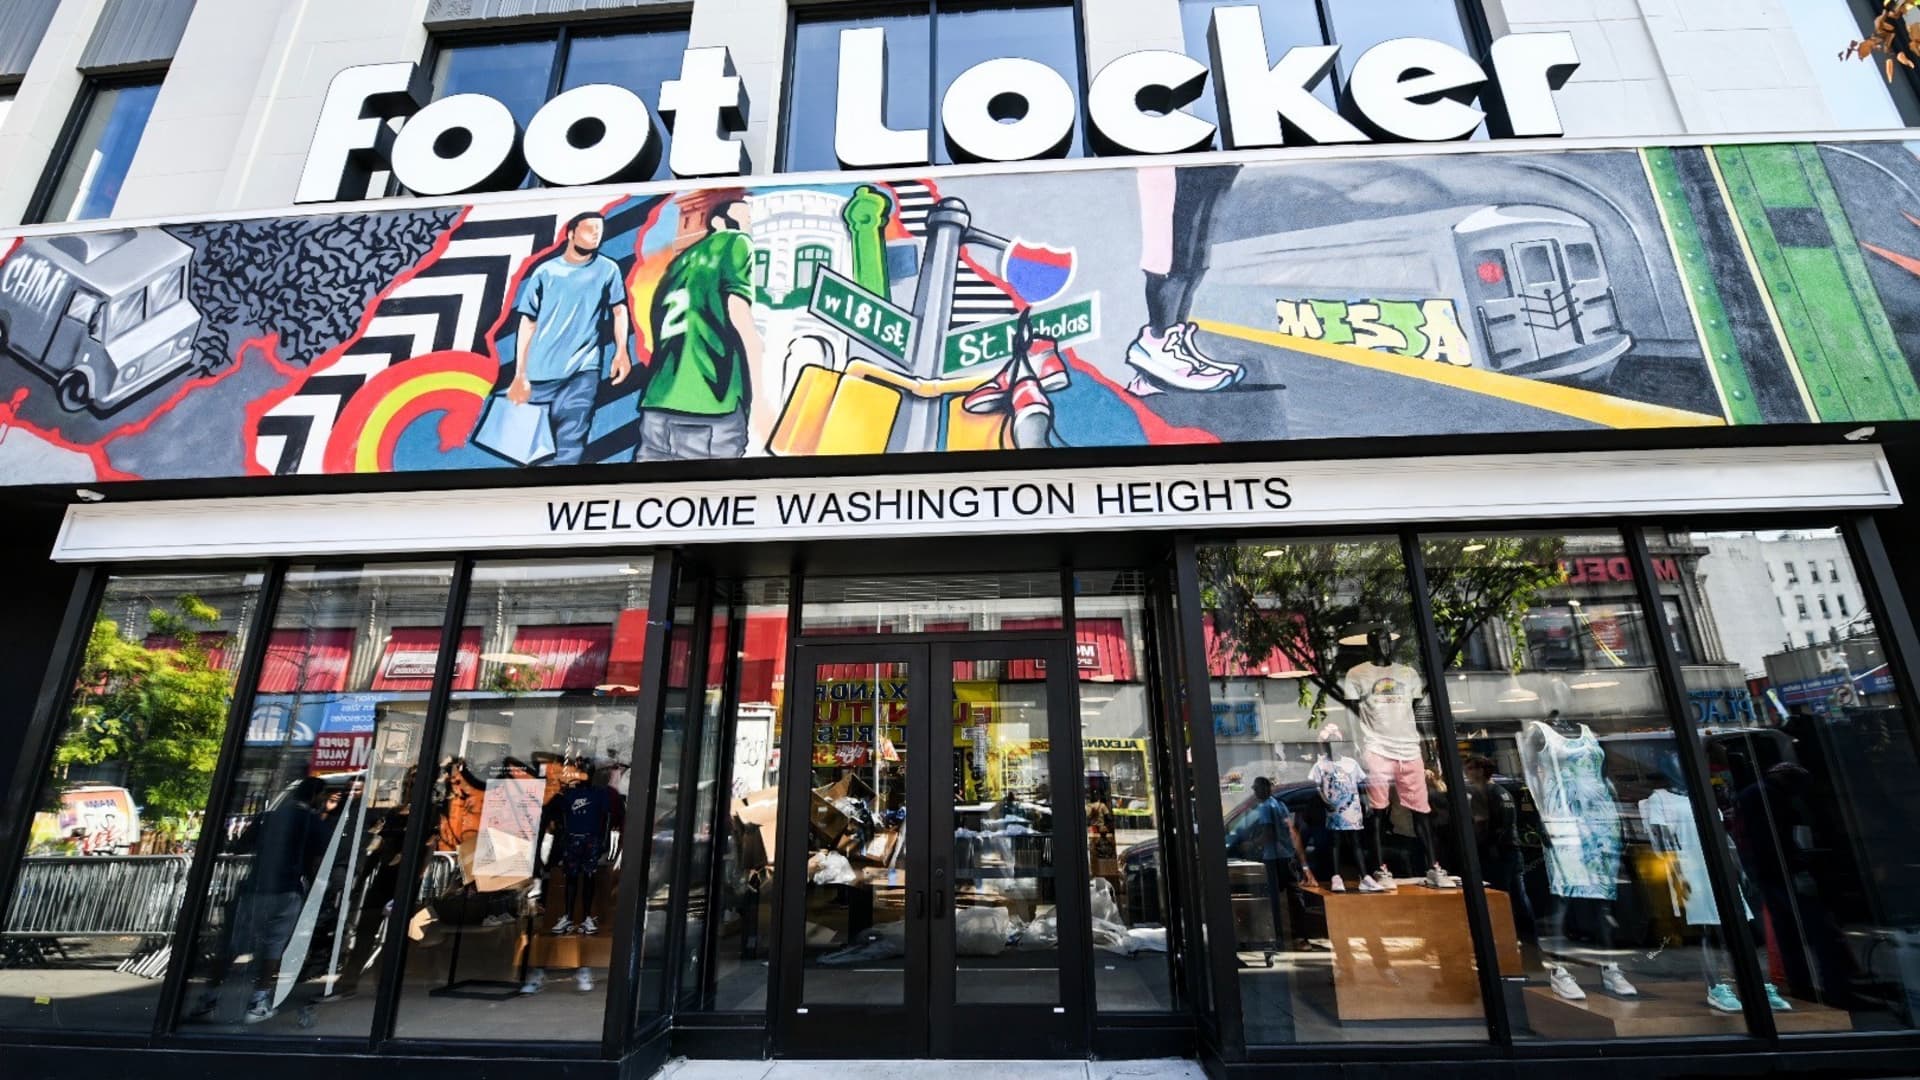 Foot Locker wirbt für erneuerte Nike-Beziehung und veröffentlicht Gewinne